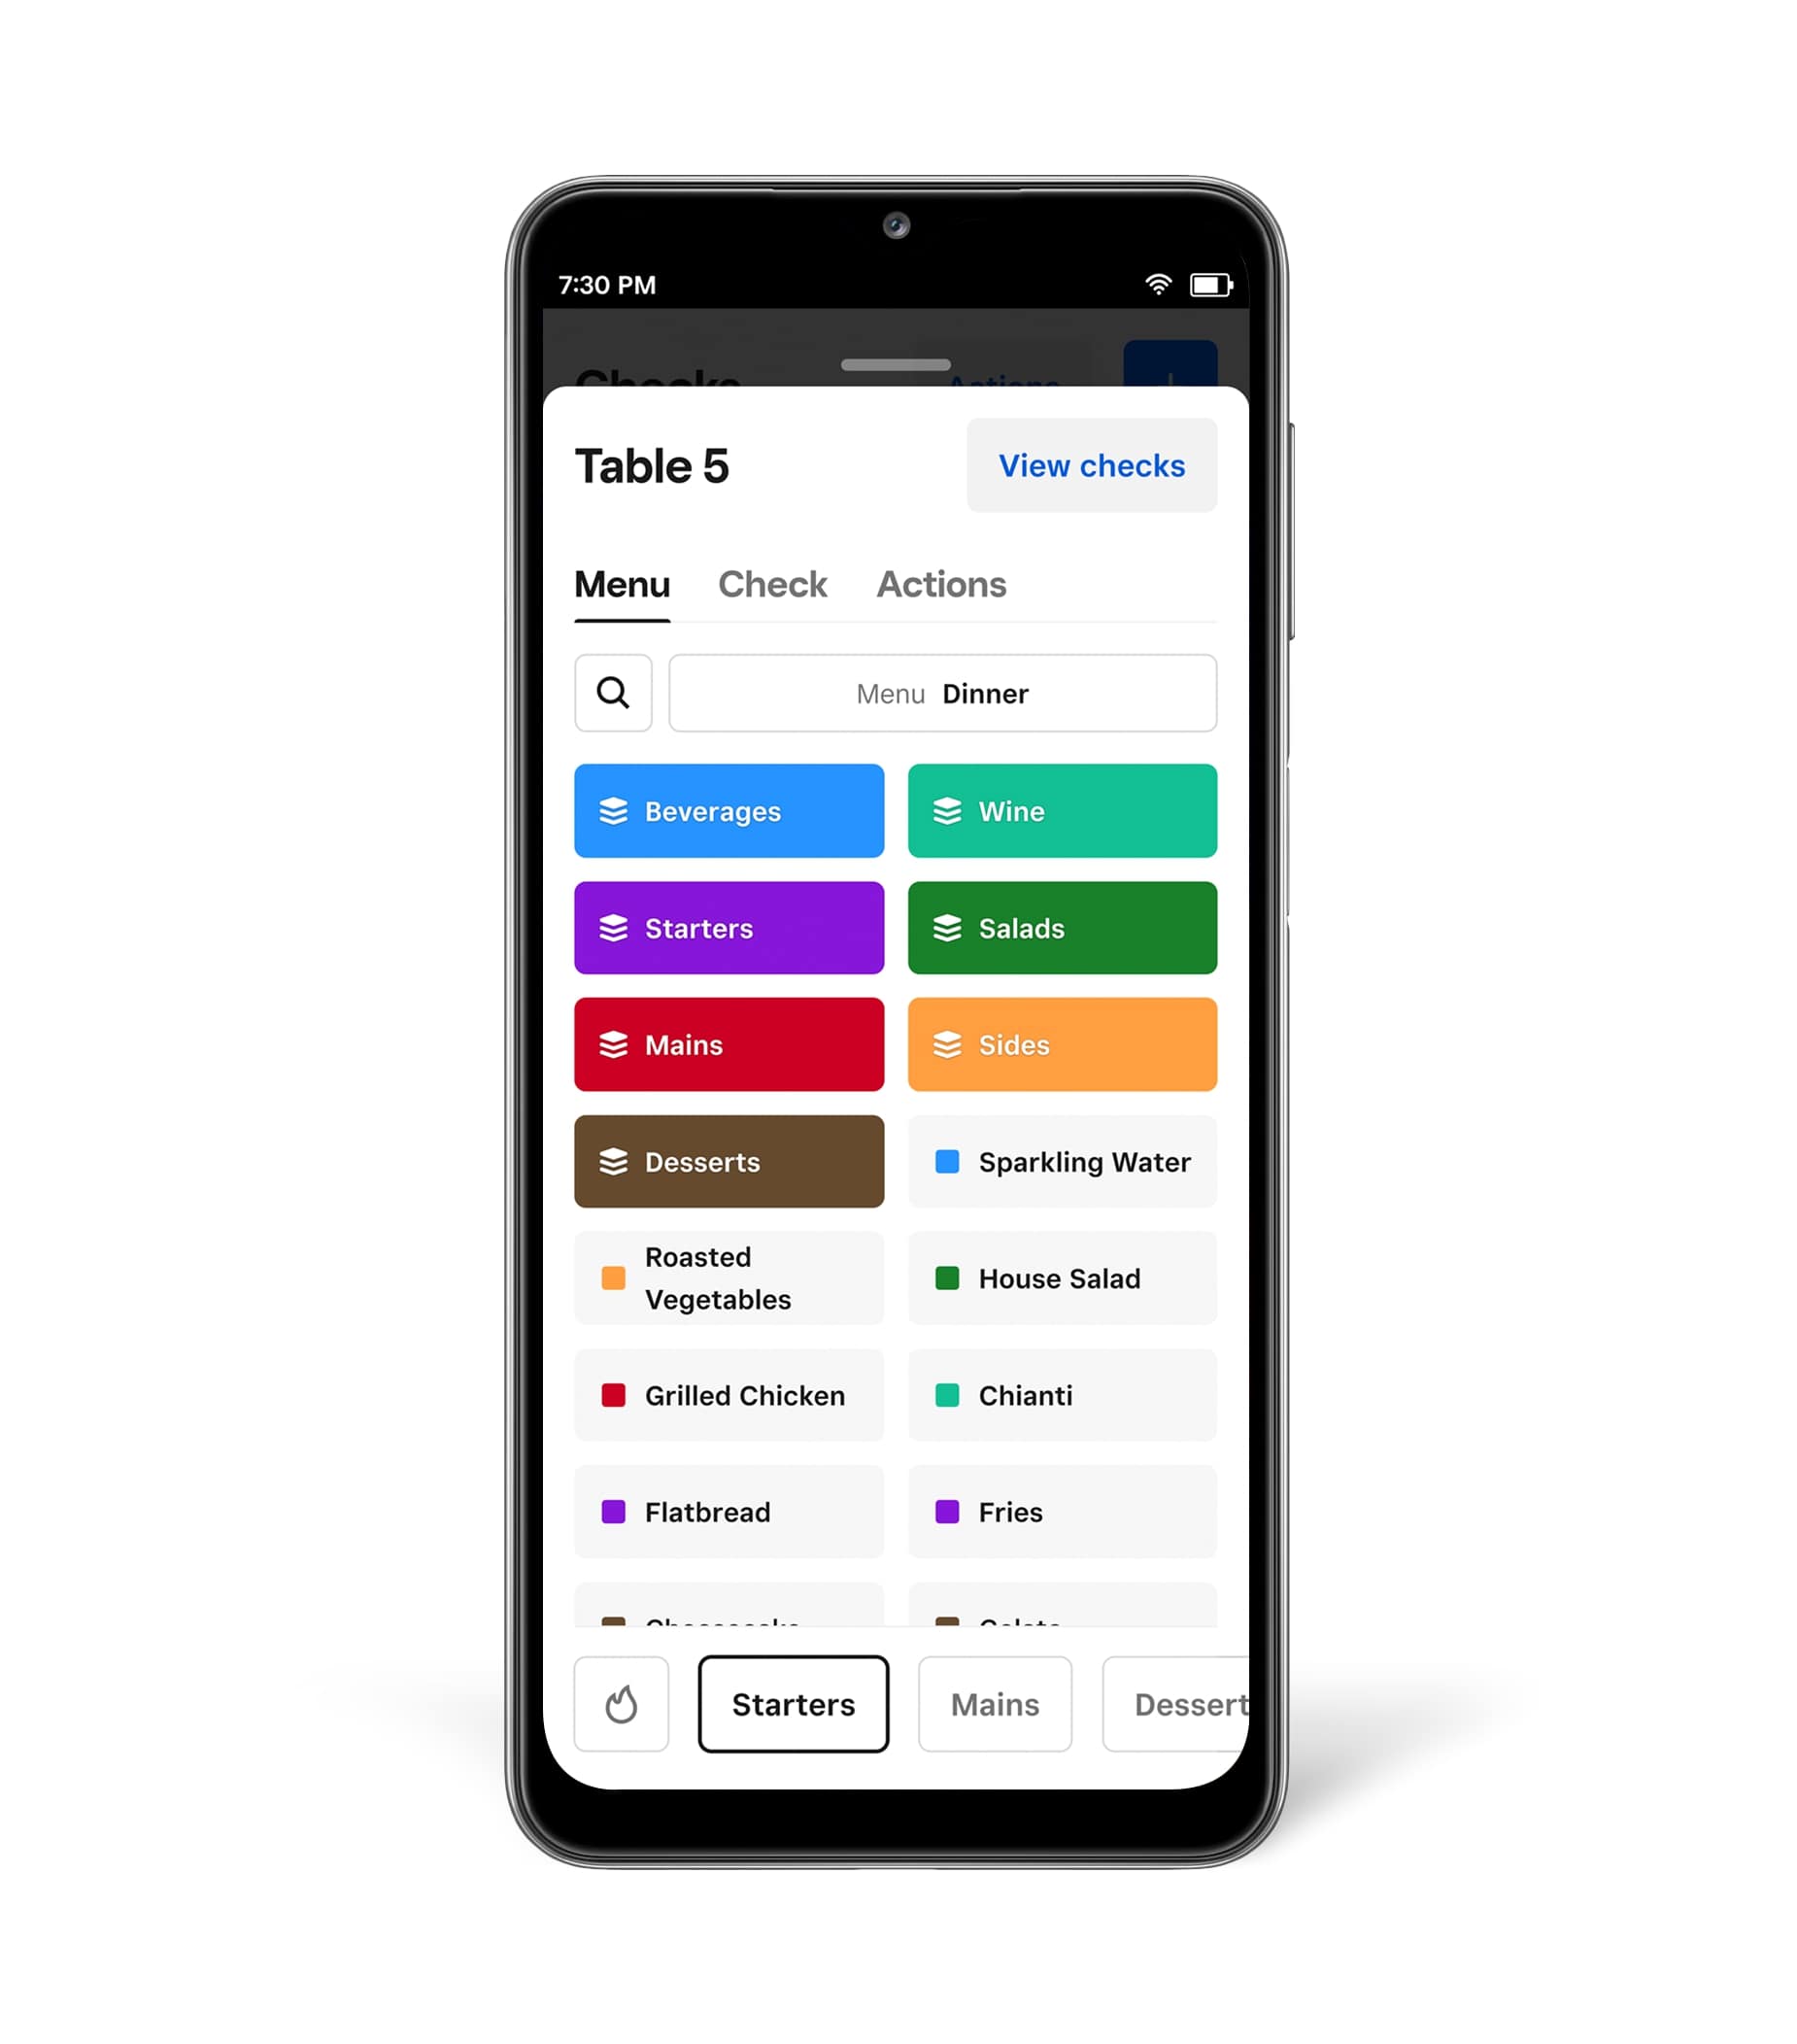 Mobile POS di Nexi - Apps en Google Play